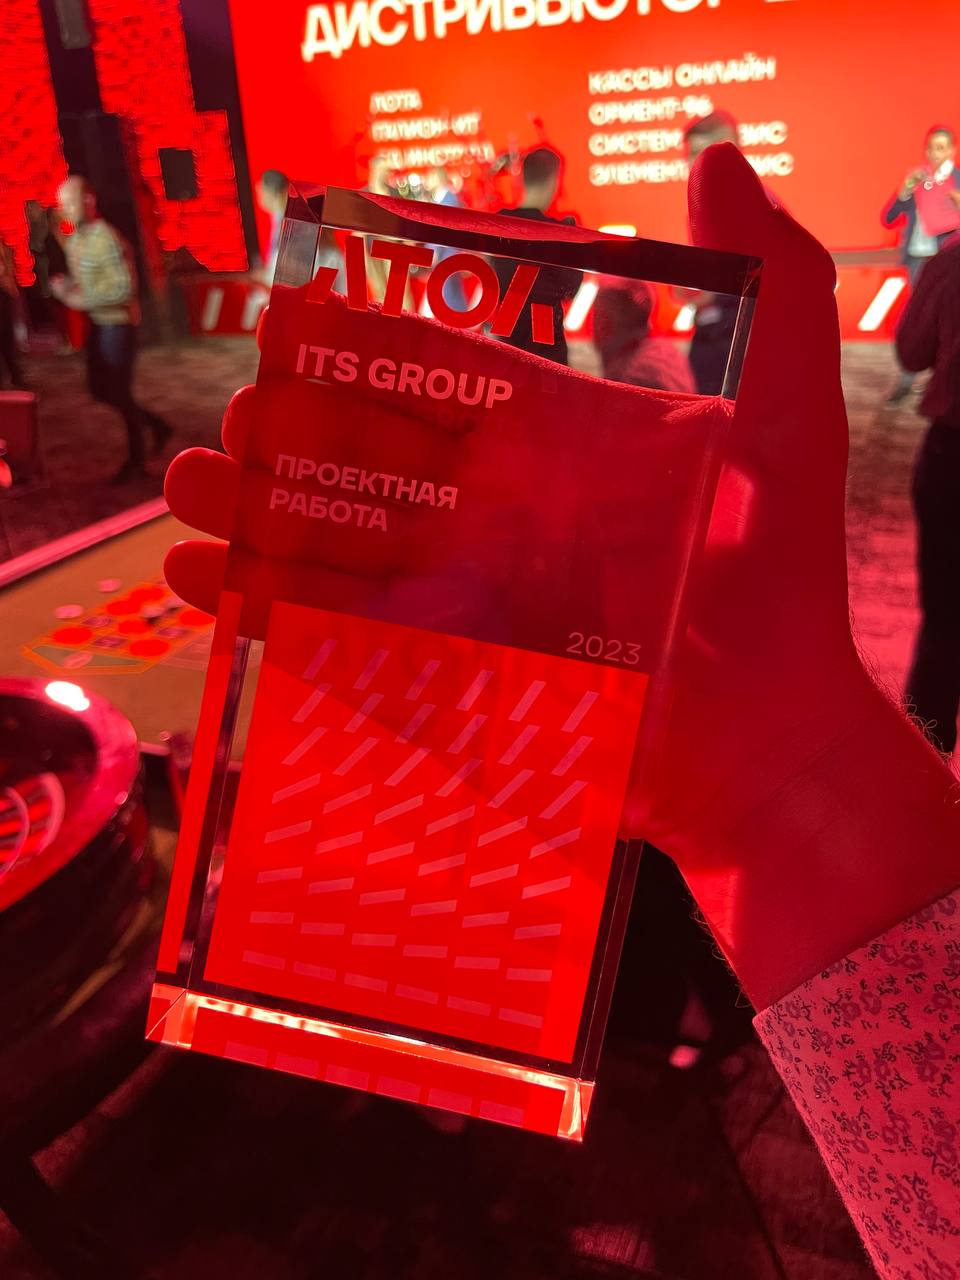 itg group получила награду на главной конференции Атол